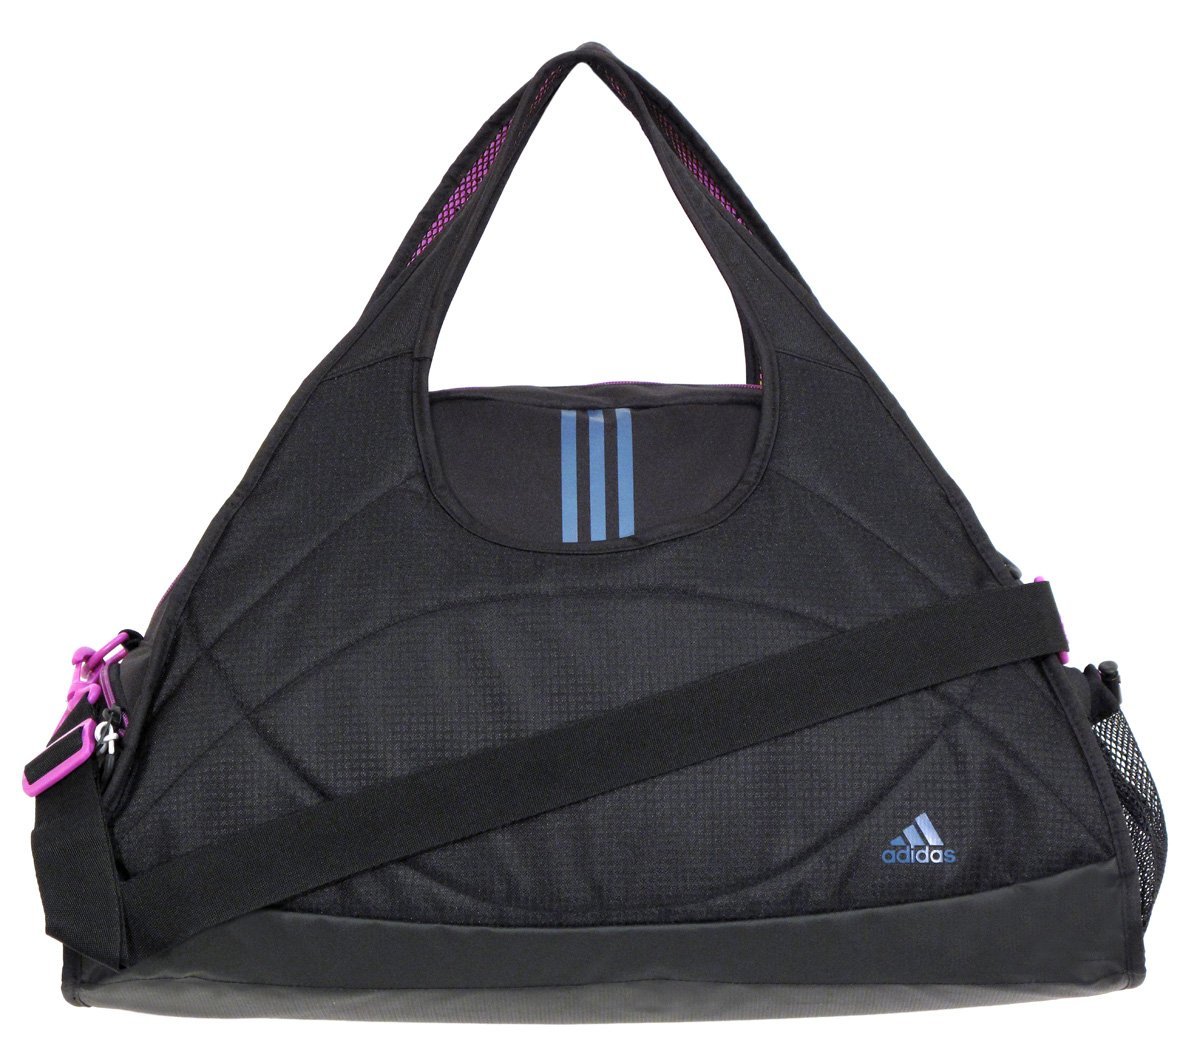 Adidas Ultimate Club Gym Bag Women Purse